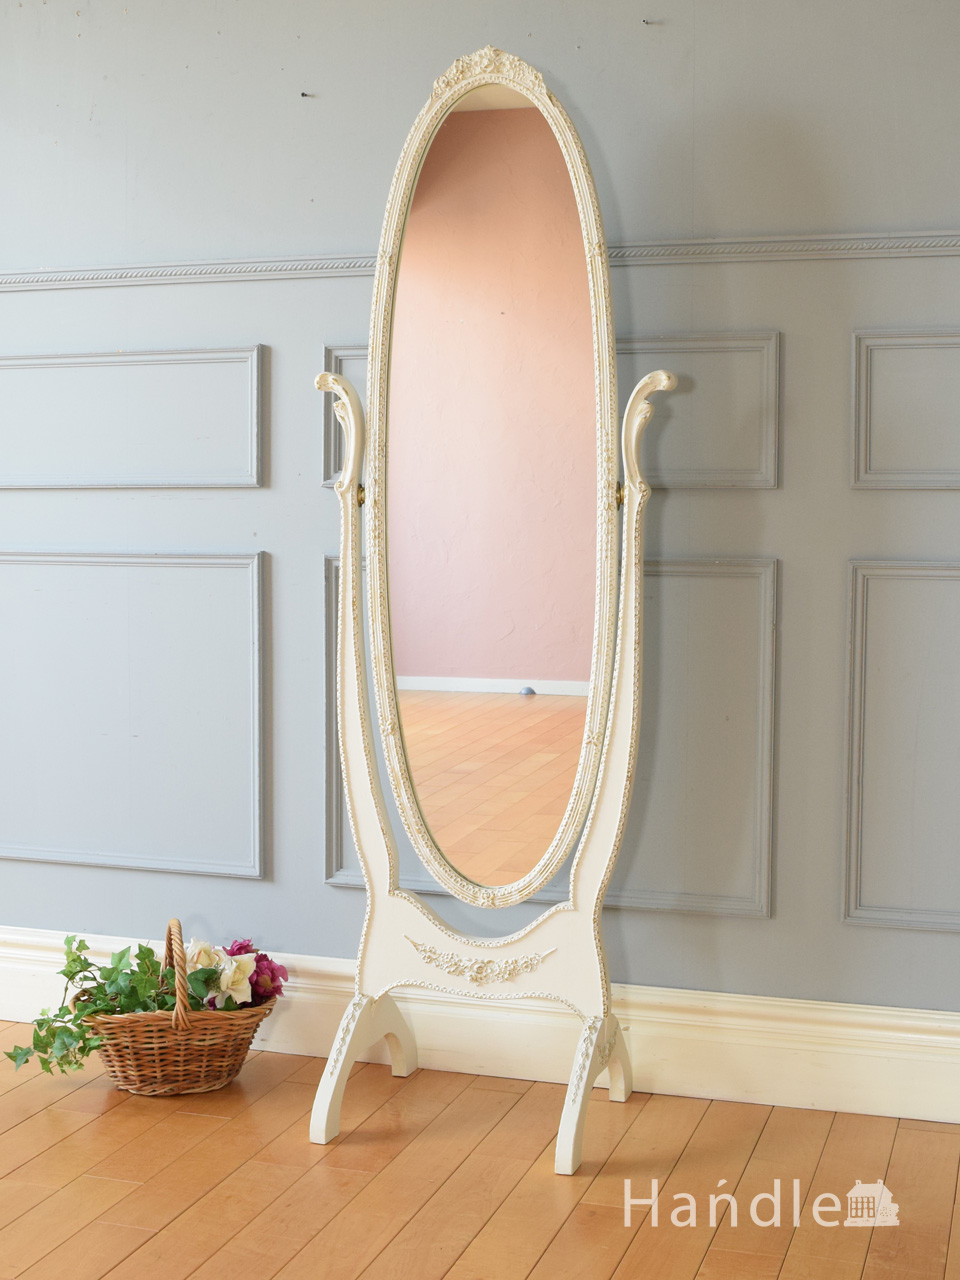 フランスで見つけたアンティークの鏡、優雅な雰囲気の白いシュバル